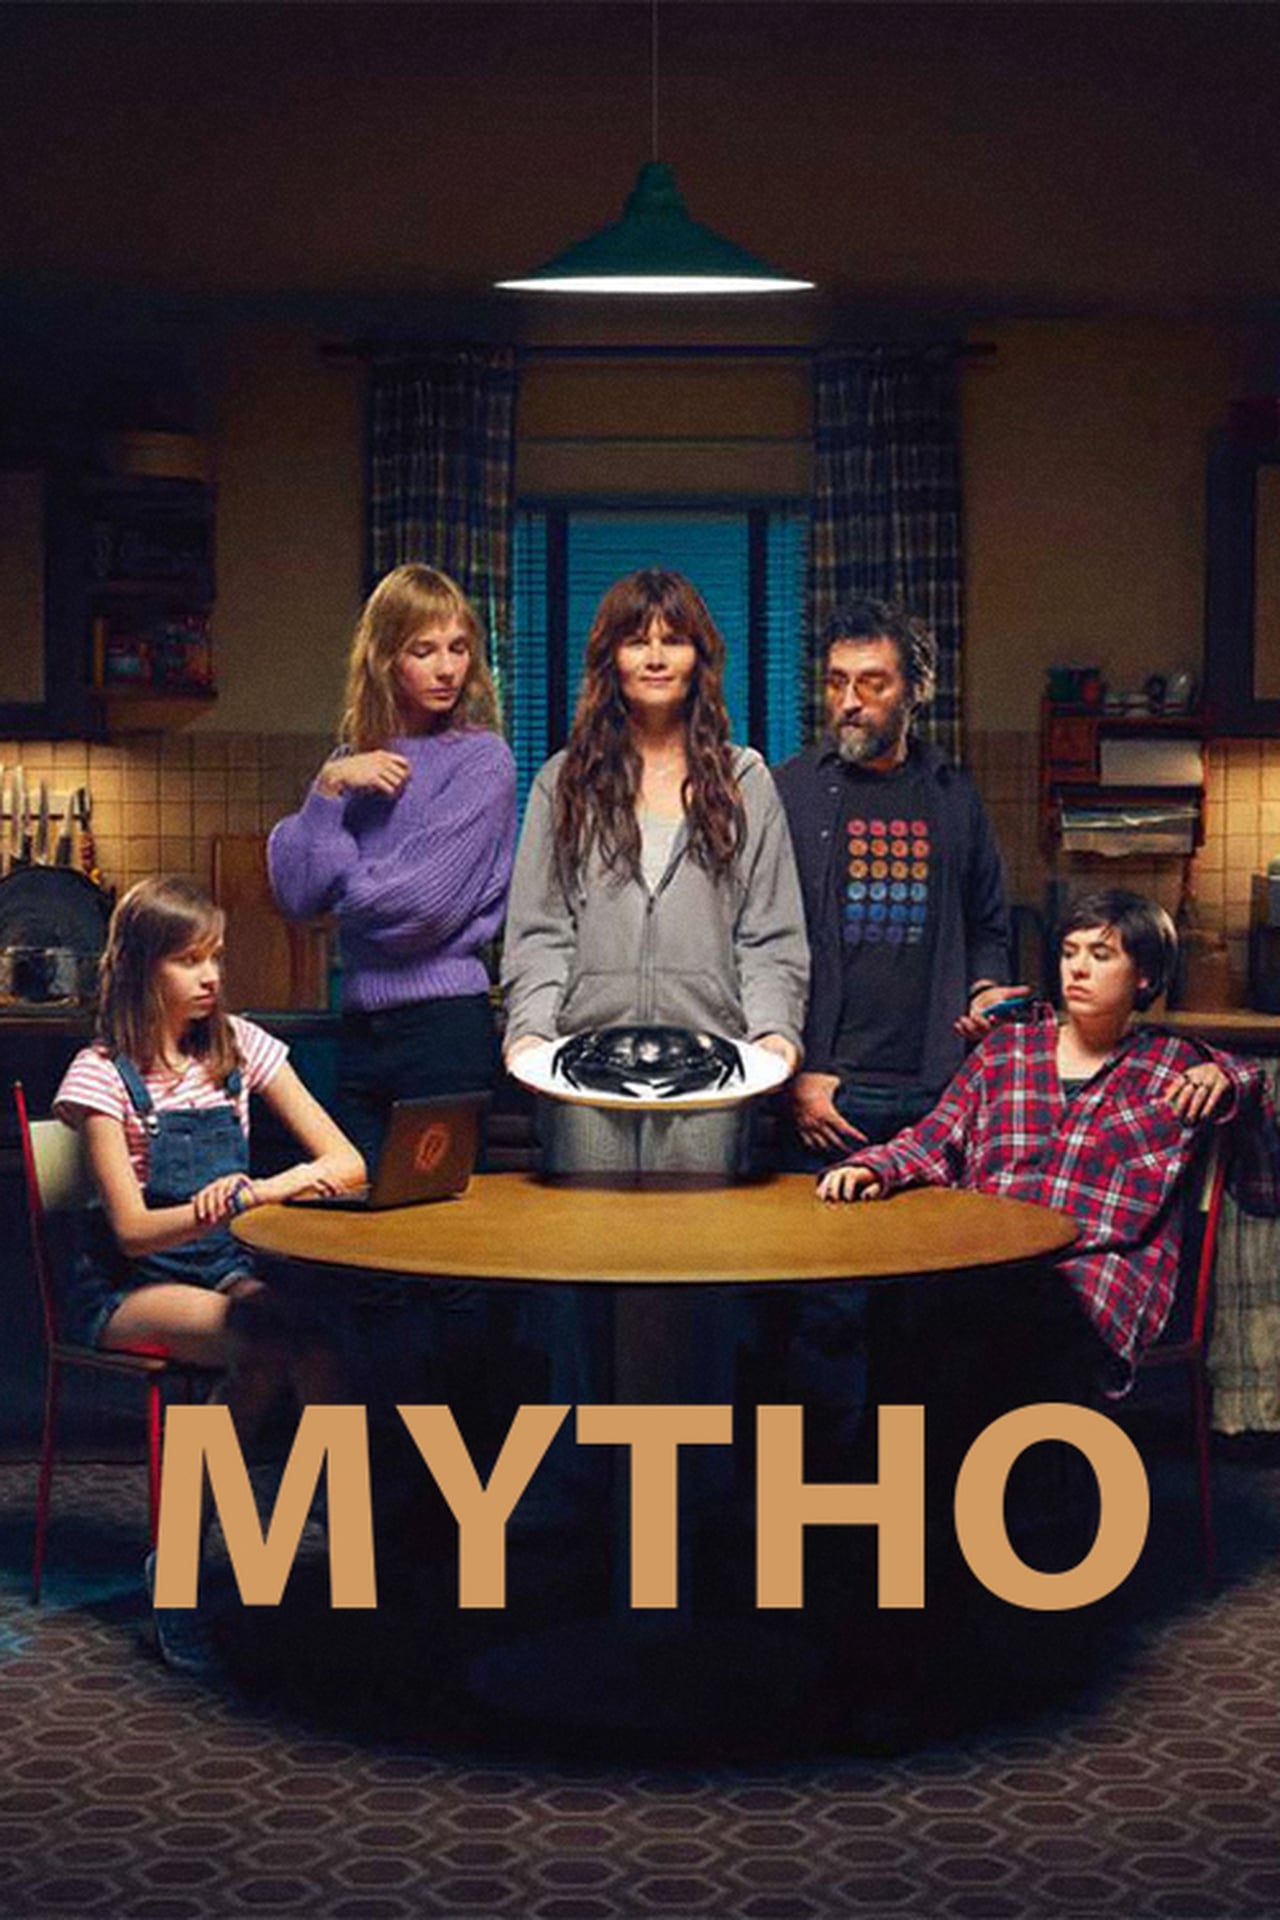 [心得] 婚姻神話 Mytho (雷) Netflix 法國郊區劇